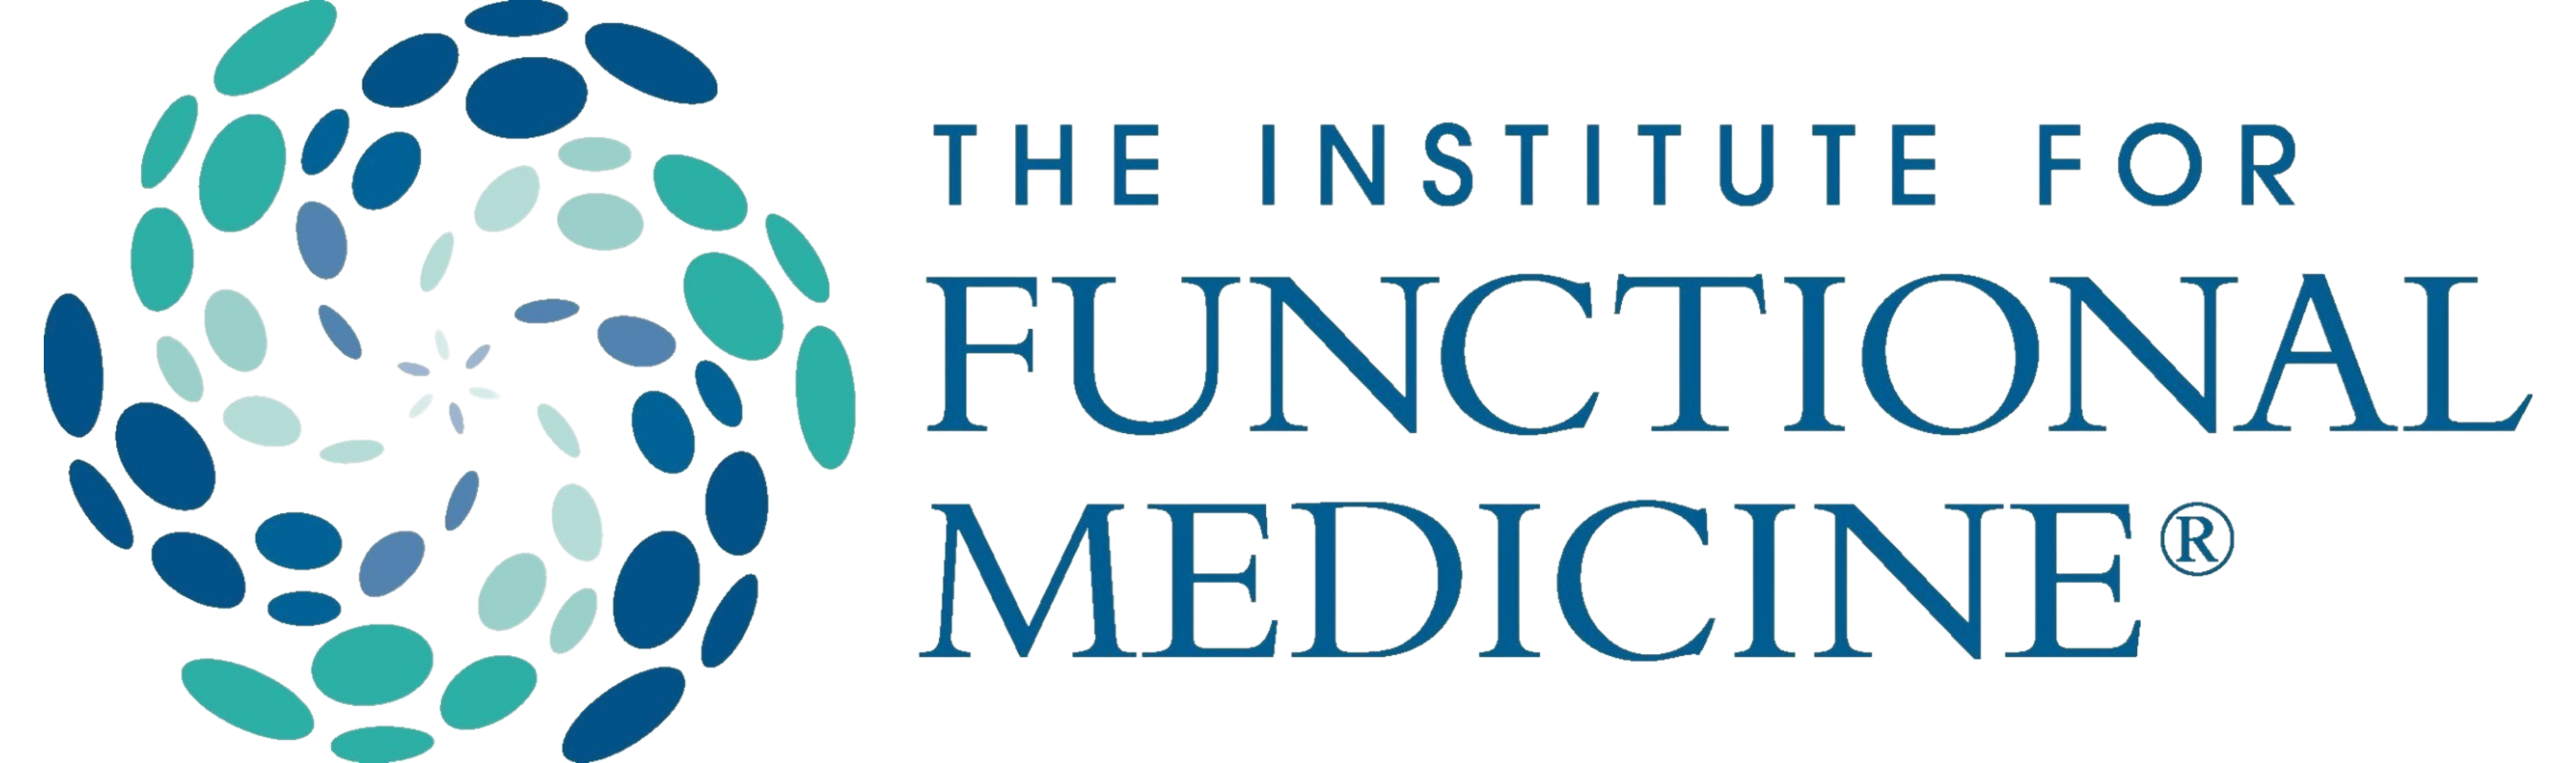 institute of functional medicine logo